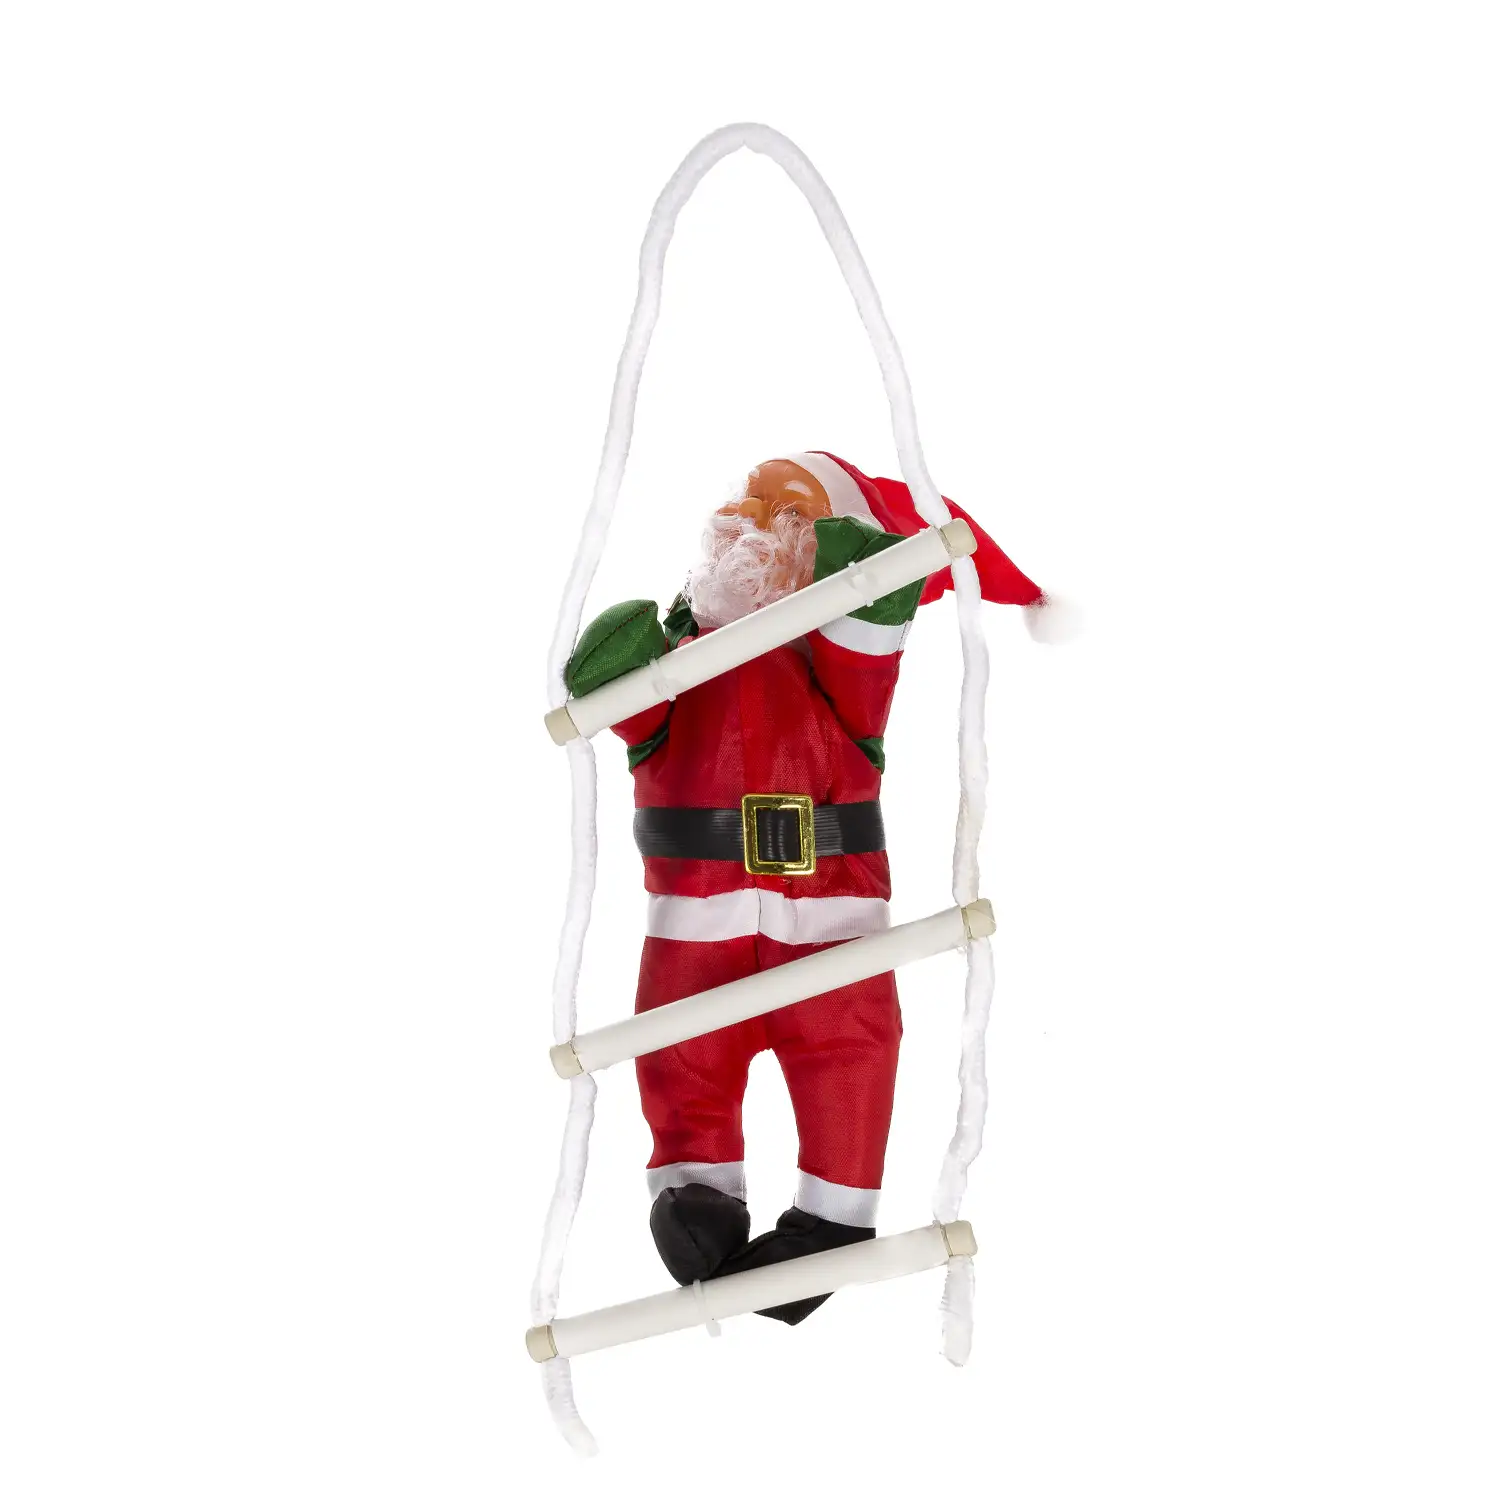 Muñeco de Papá Noel con escalera.